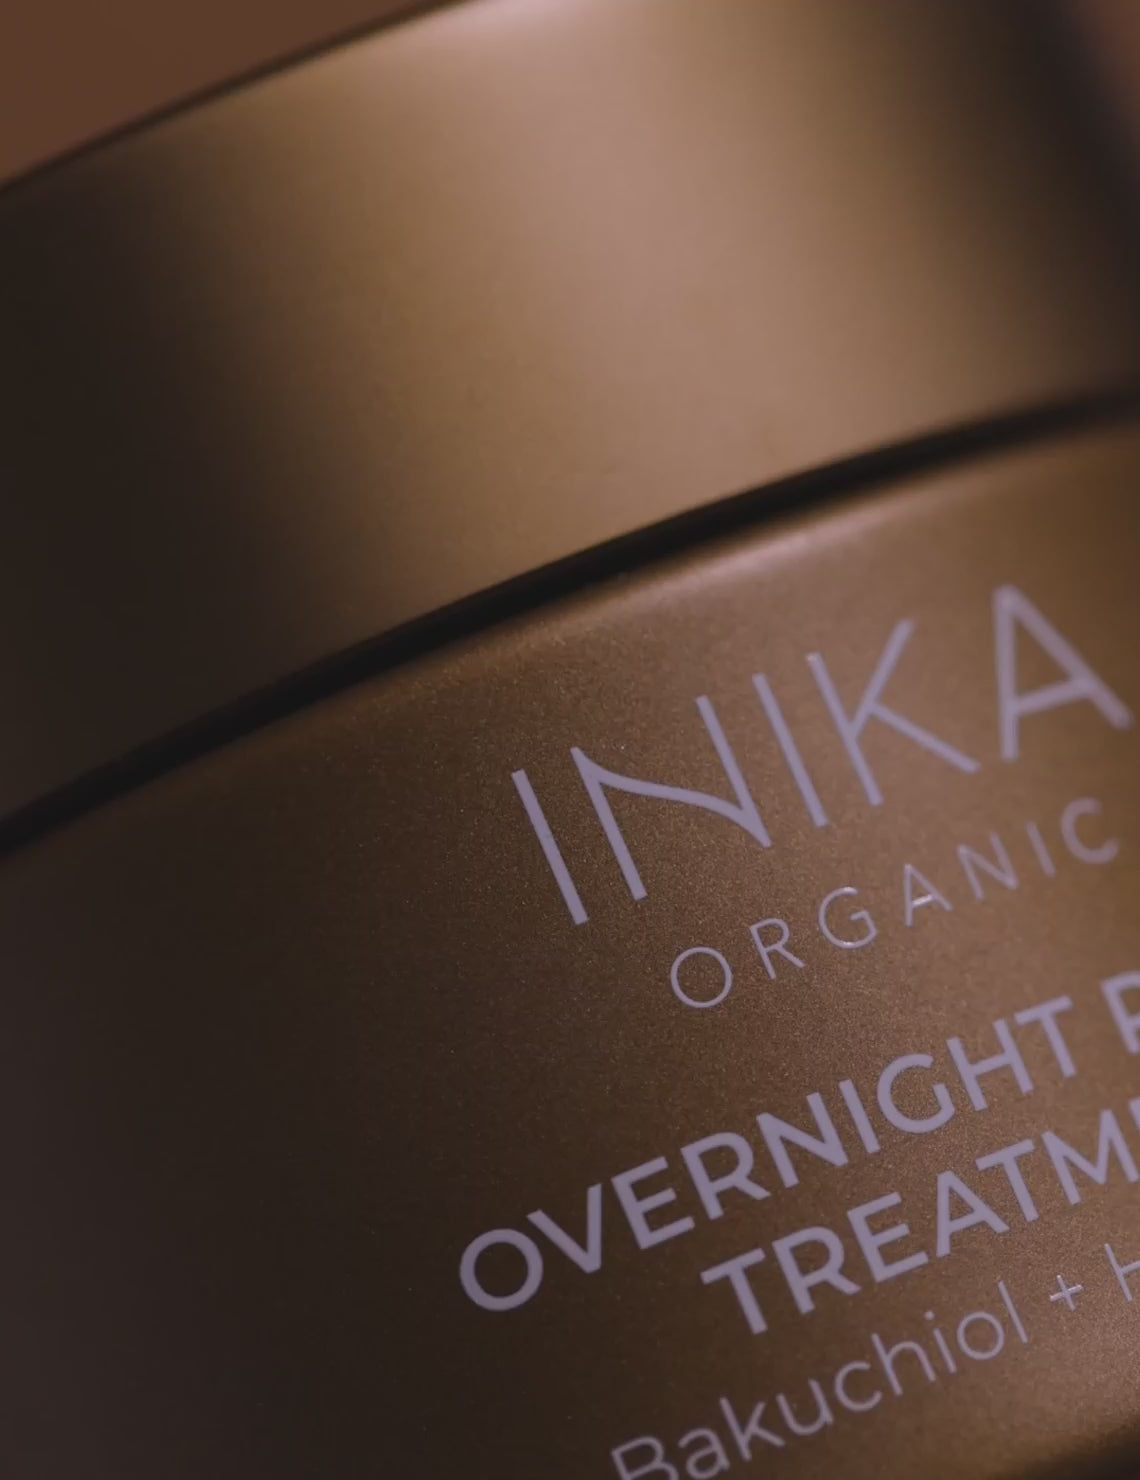 INIKA Organic Overnight Repair Treatment